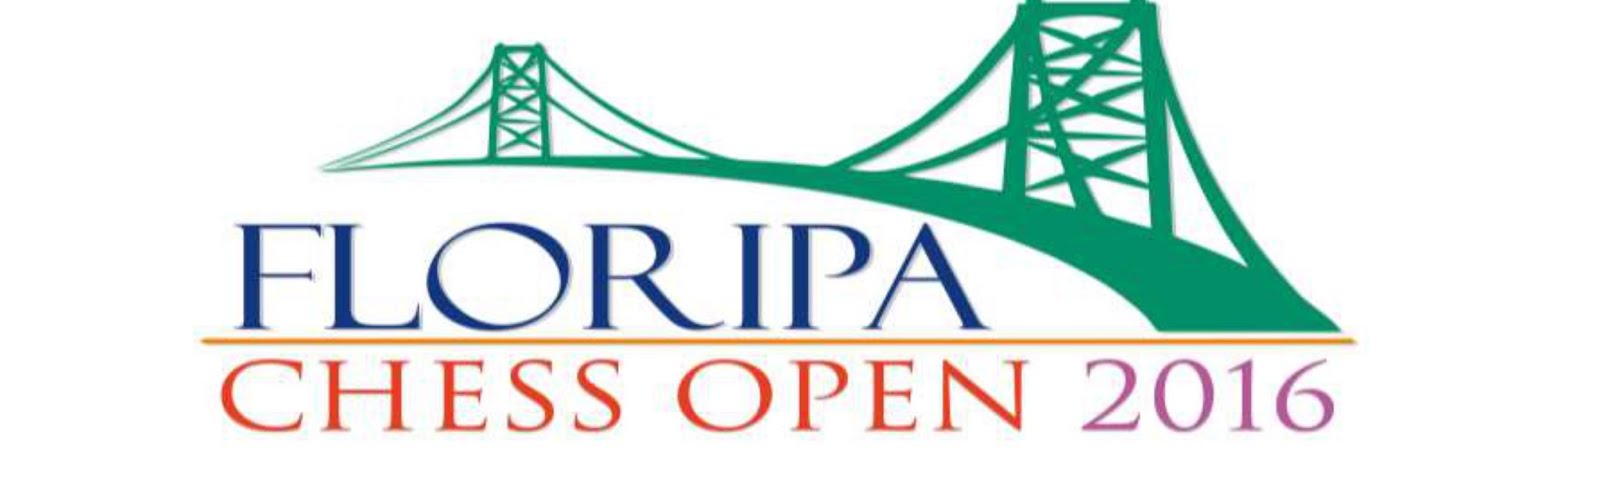 IIFloripa_Open